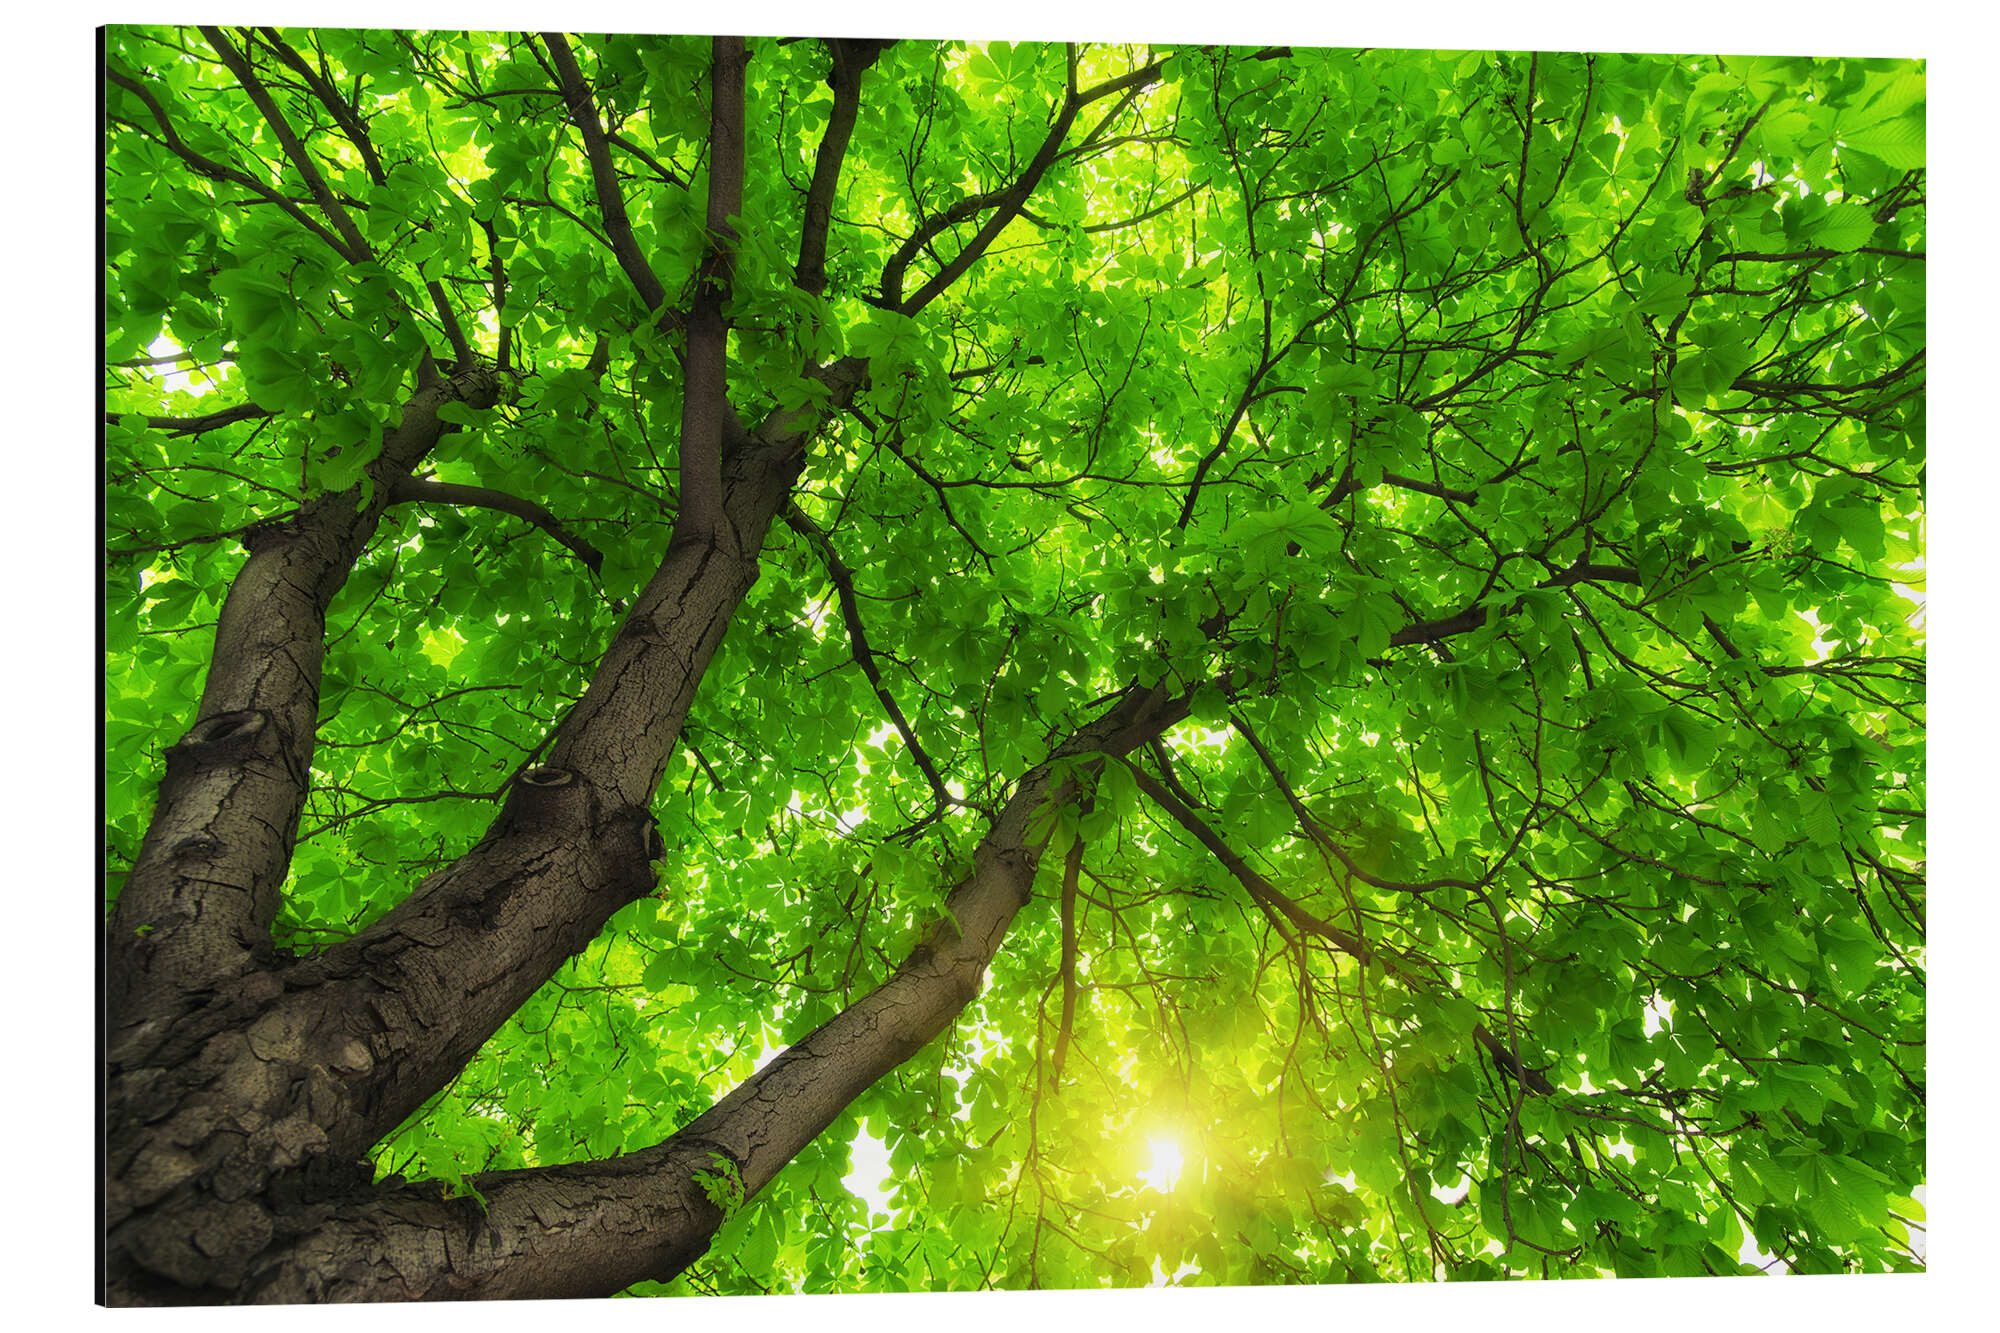 Posterlounge Alu-Dibond-Druck Editors Choice, Unter einem großen grünen Baum, Fotografie